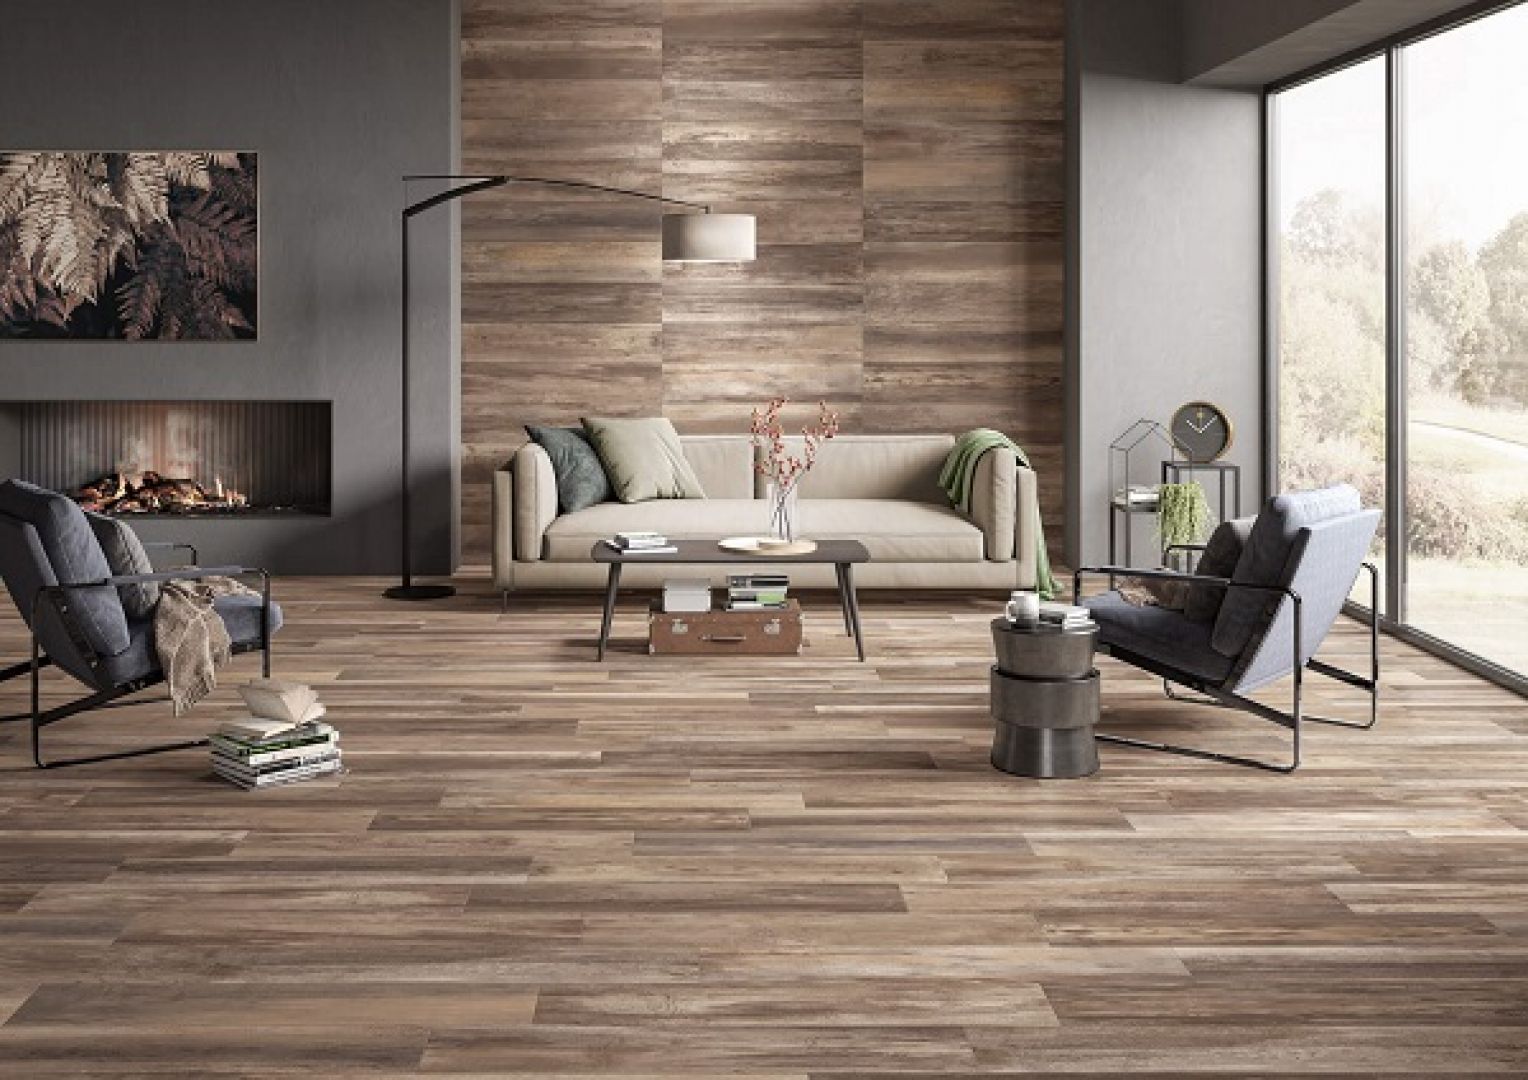 Eurotile là thương hiệu gạch uy tín và chất lượng, mang đến vẻ đẹp tự nhiên của gỗ thông qua các mẫu gạch giả gỗ Eurotile. Sở hữu một bức tranh vẻ đẹp bình yên từ thiên nhiên trong phòng khách của bạn trong năm